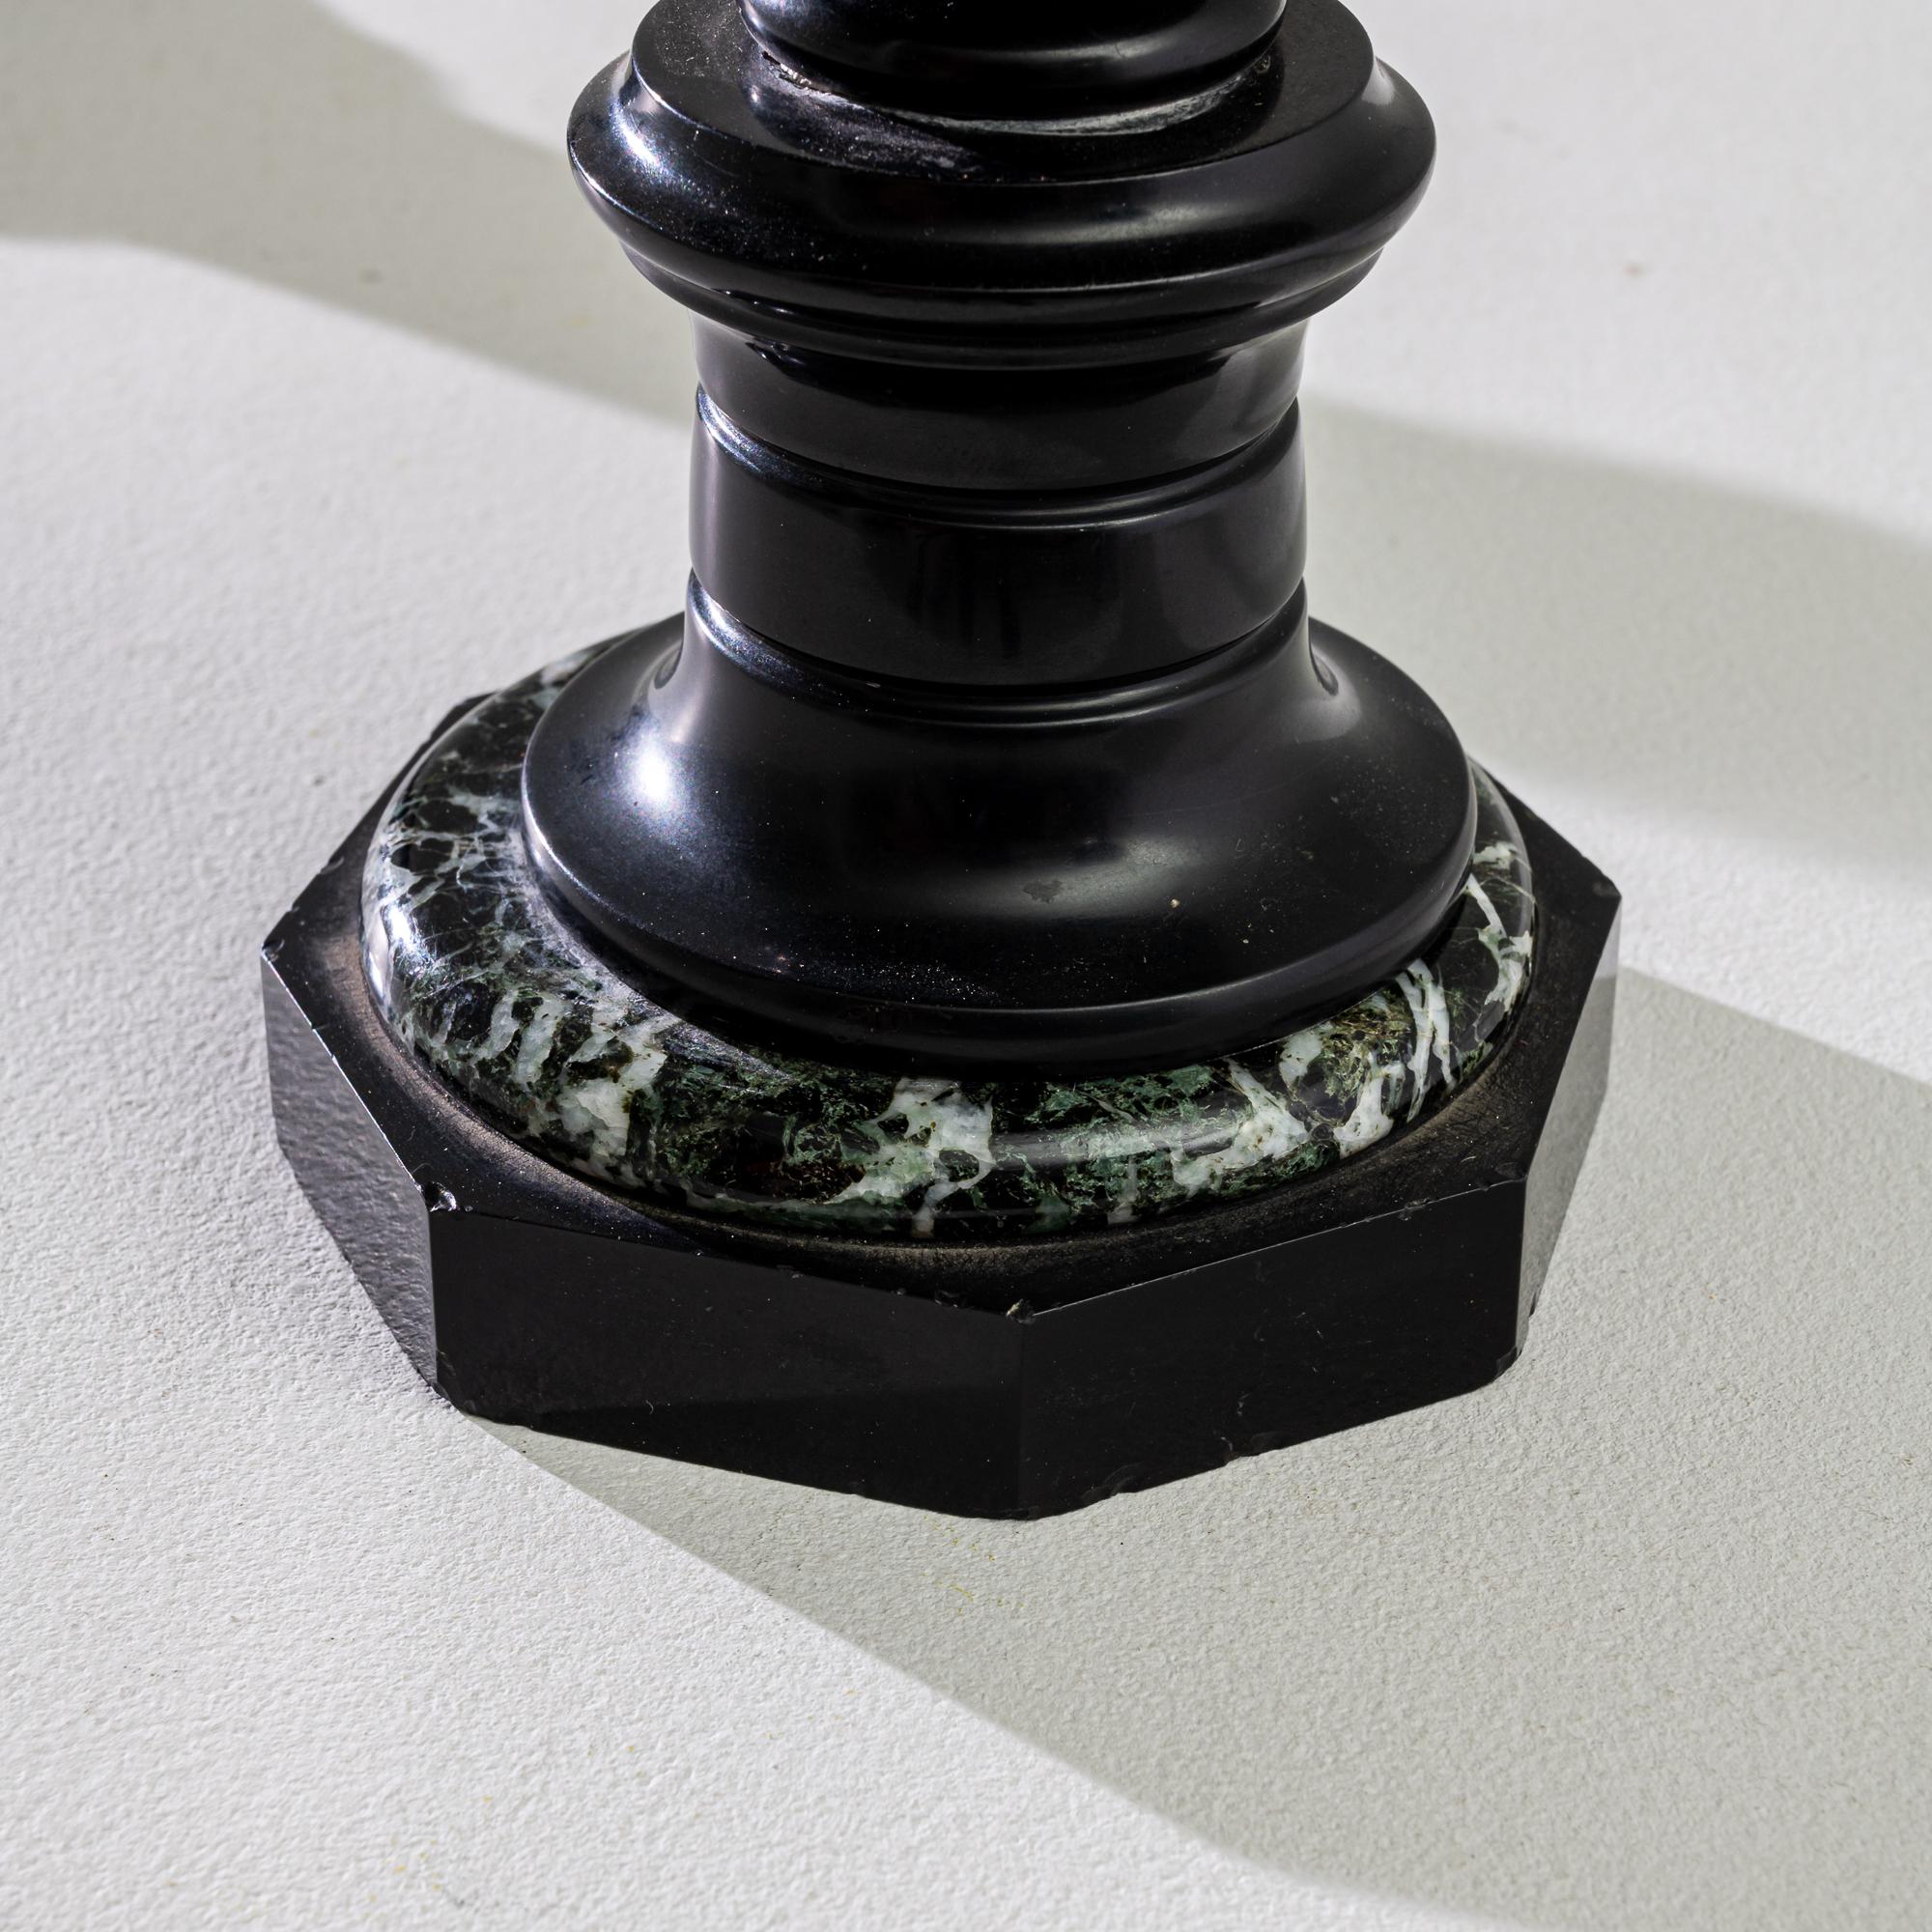 Verwandeln Sie Ihren Raum mit diesem Set aus zwei französischen Marmor-Kerzenhaltern aus den 1880er Jahren, die eine exquisite Mischung aus Raffinesse und Kunstfertigkeit darstellen. Diese aus luxuriösem schwarzem Marmor gefertigten Kerzenhalter